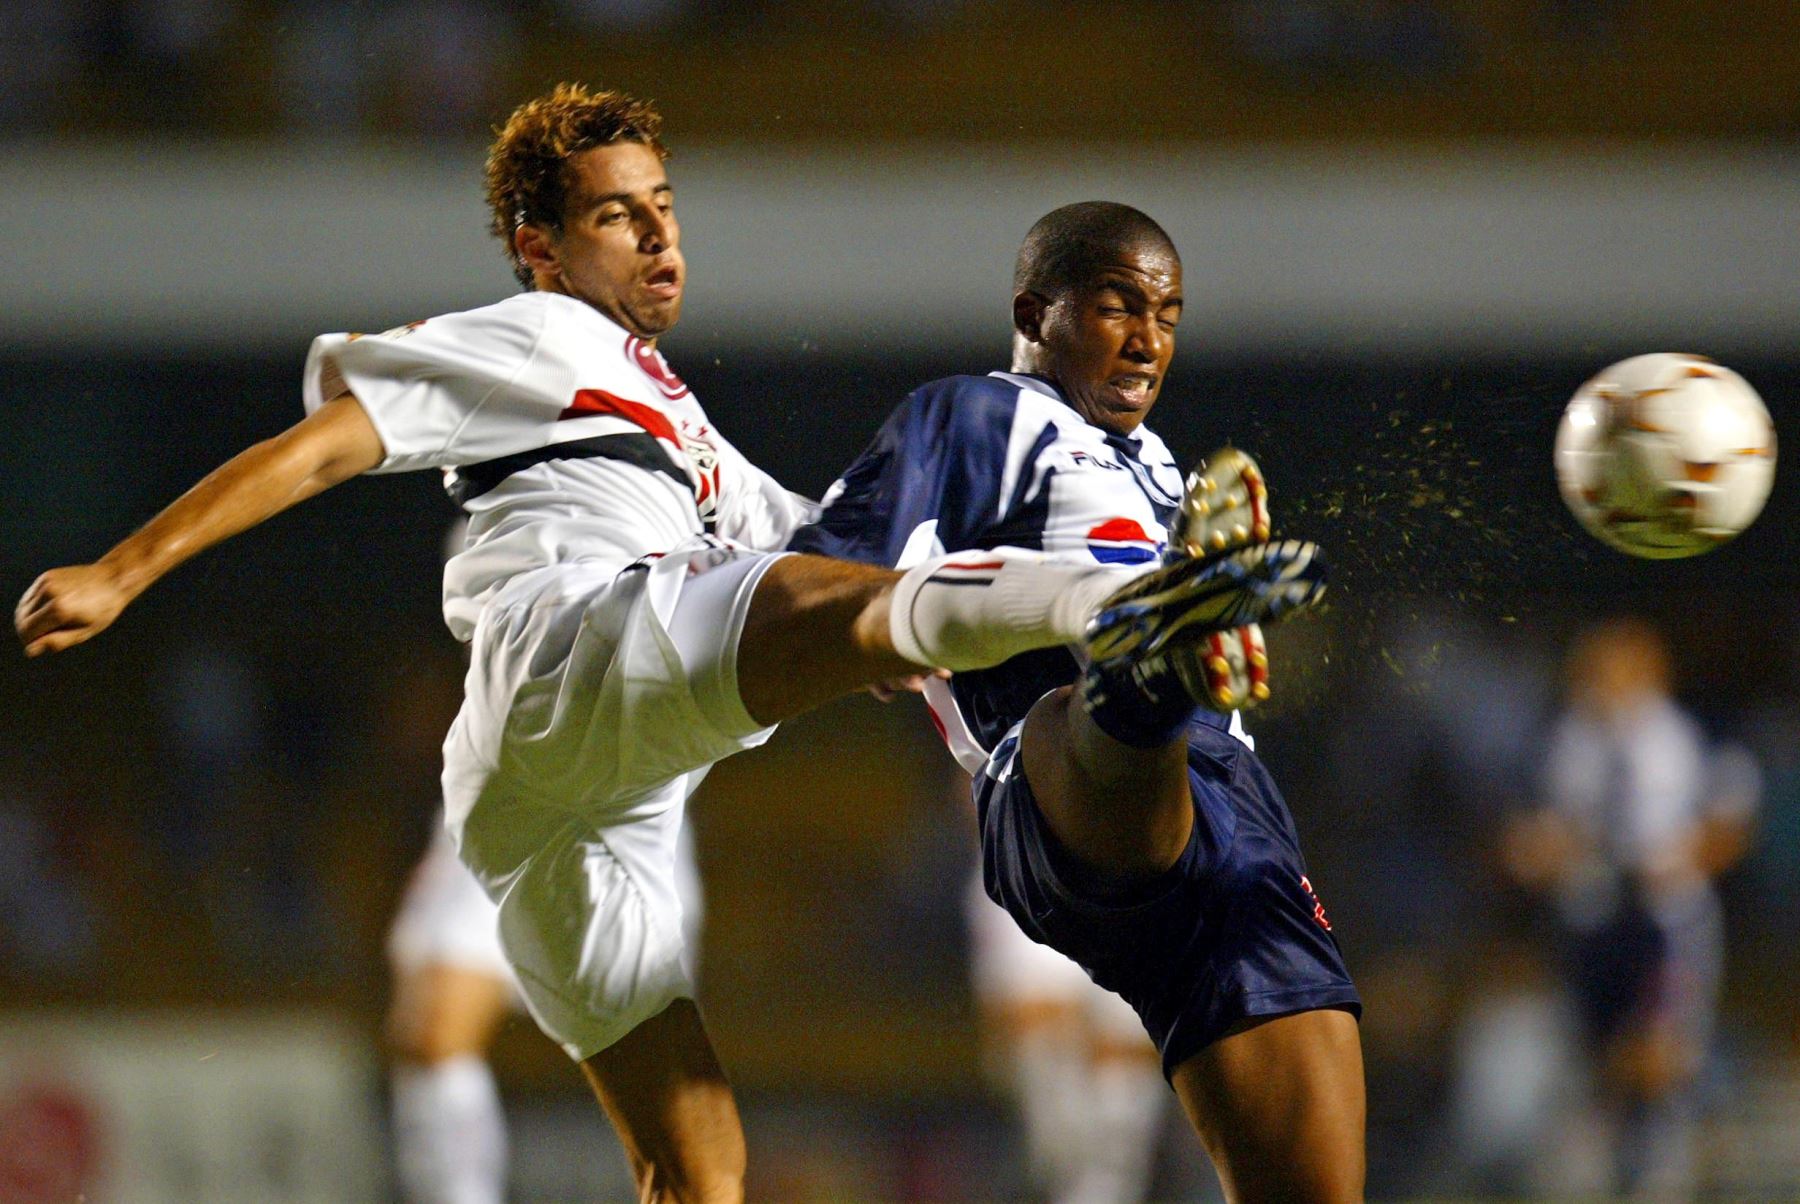 Jefferson Farfán, delantero del Alianza Lima, disputa el balón ante Adriano, mediocampista del Sao Paulo, el 07 de abril de 2004, en el Estadio Morumbi de Sao Paulo, Brasil, en partido por la Copa Libertadores de America. Foto: AFP